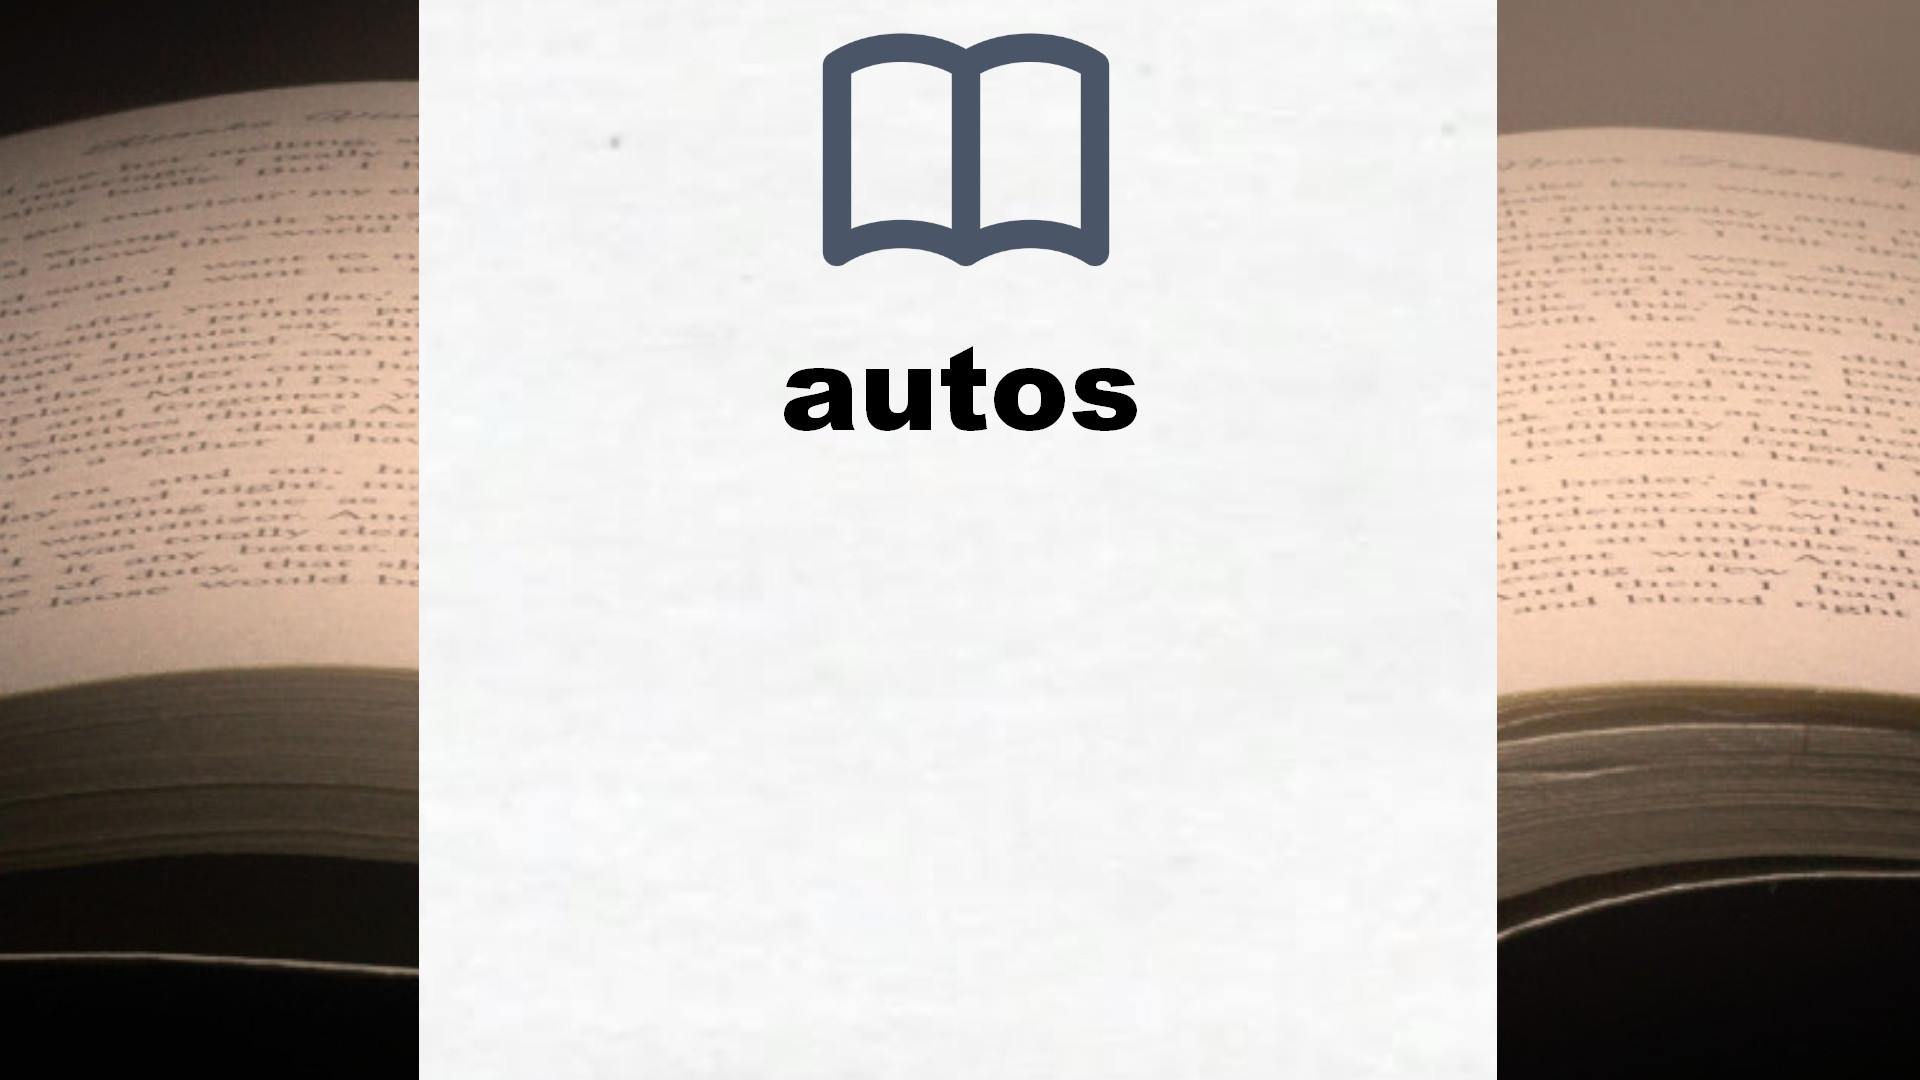 Libros sobre autos